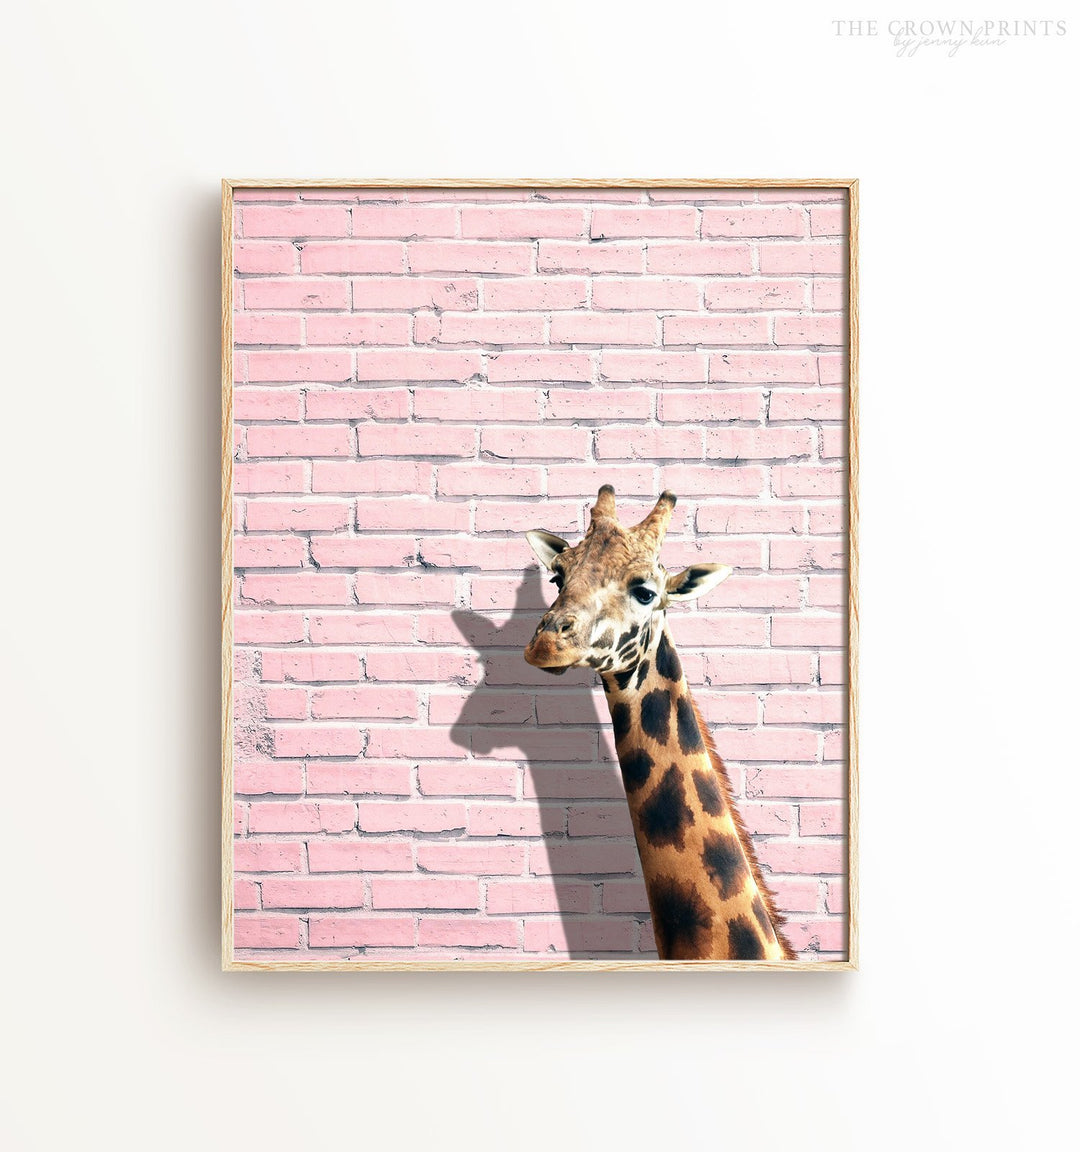 Giraffe on a Pink Wall